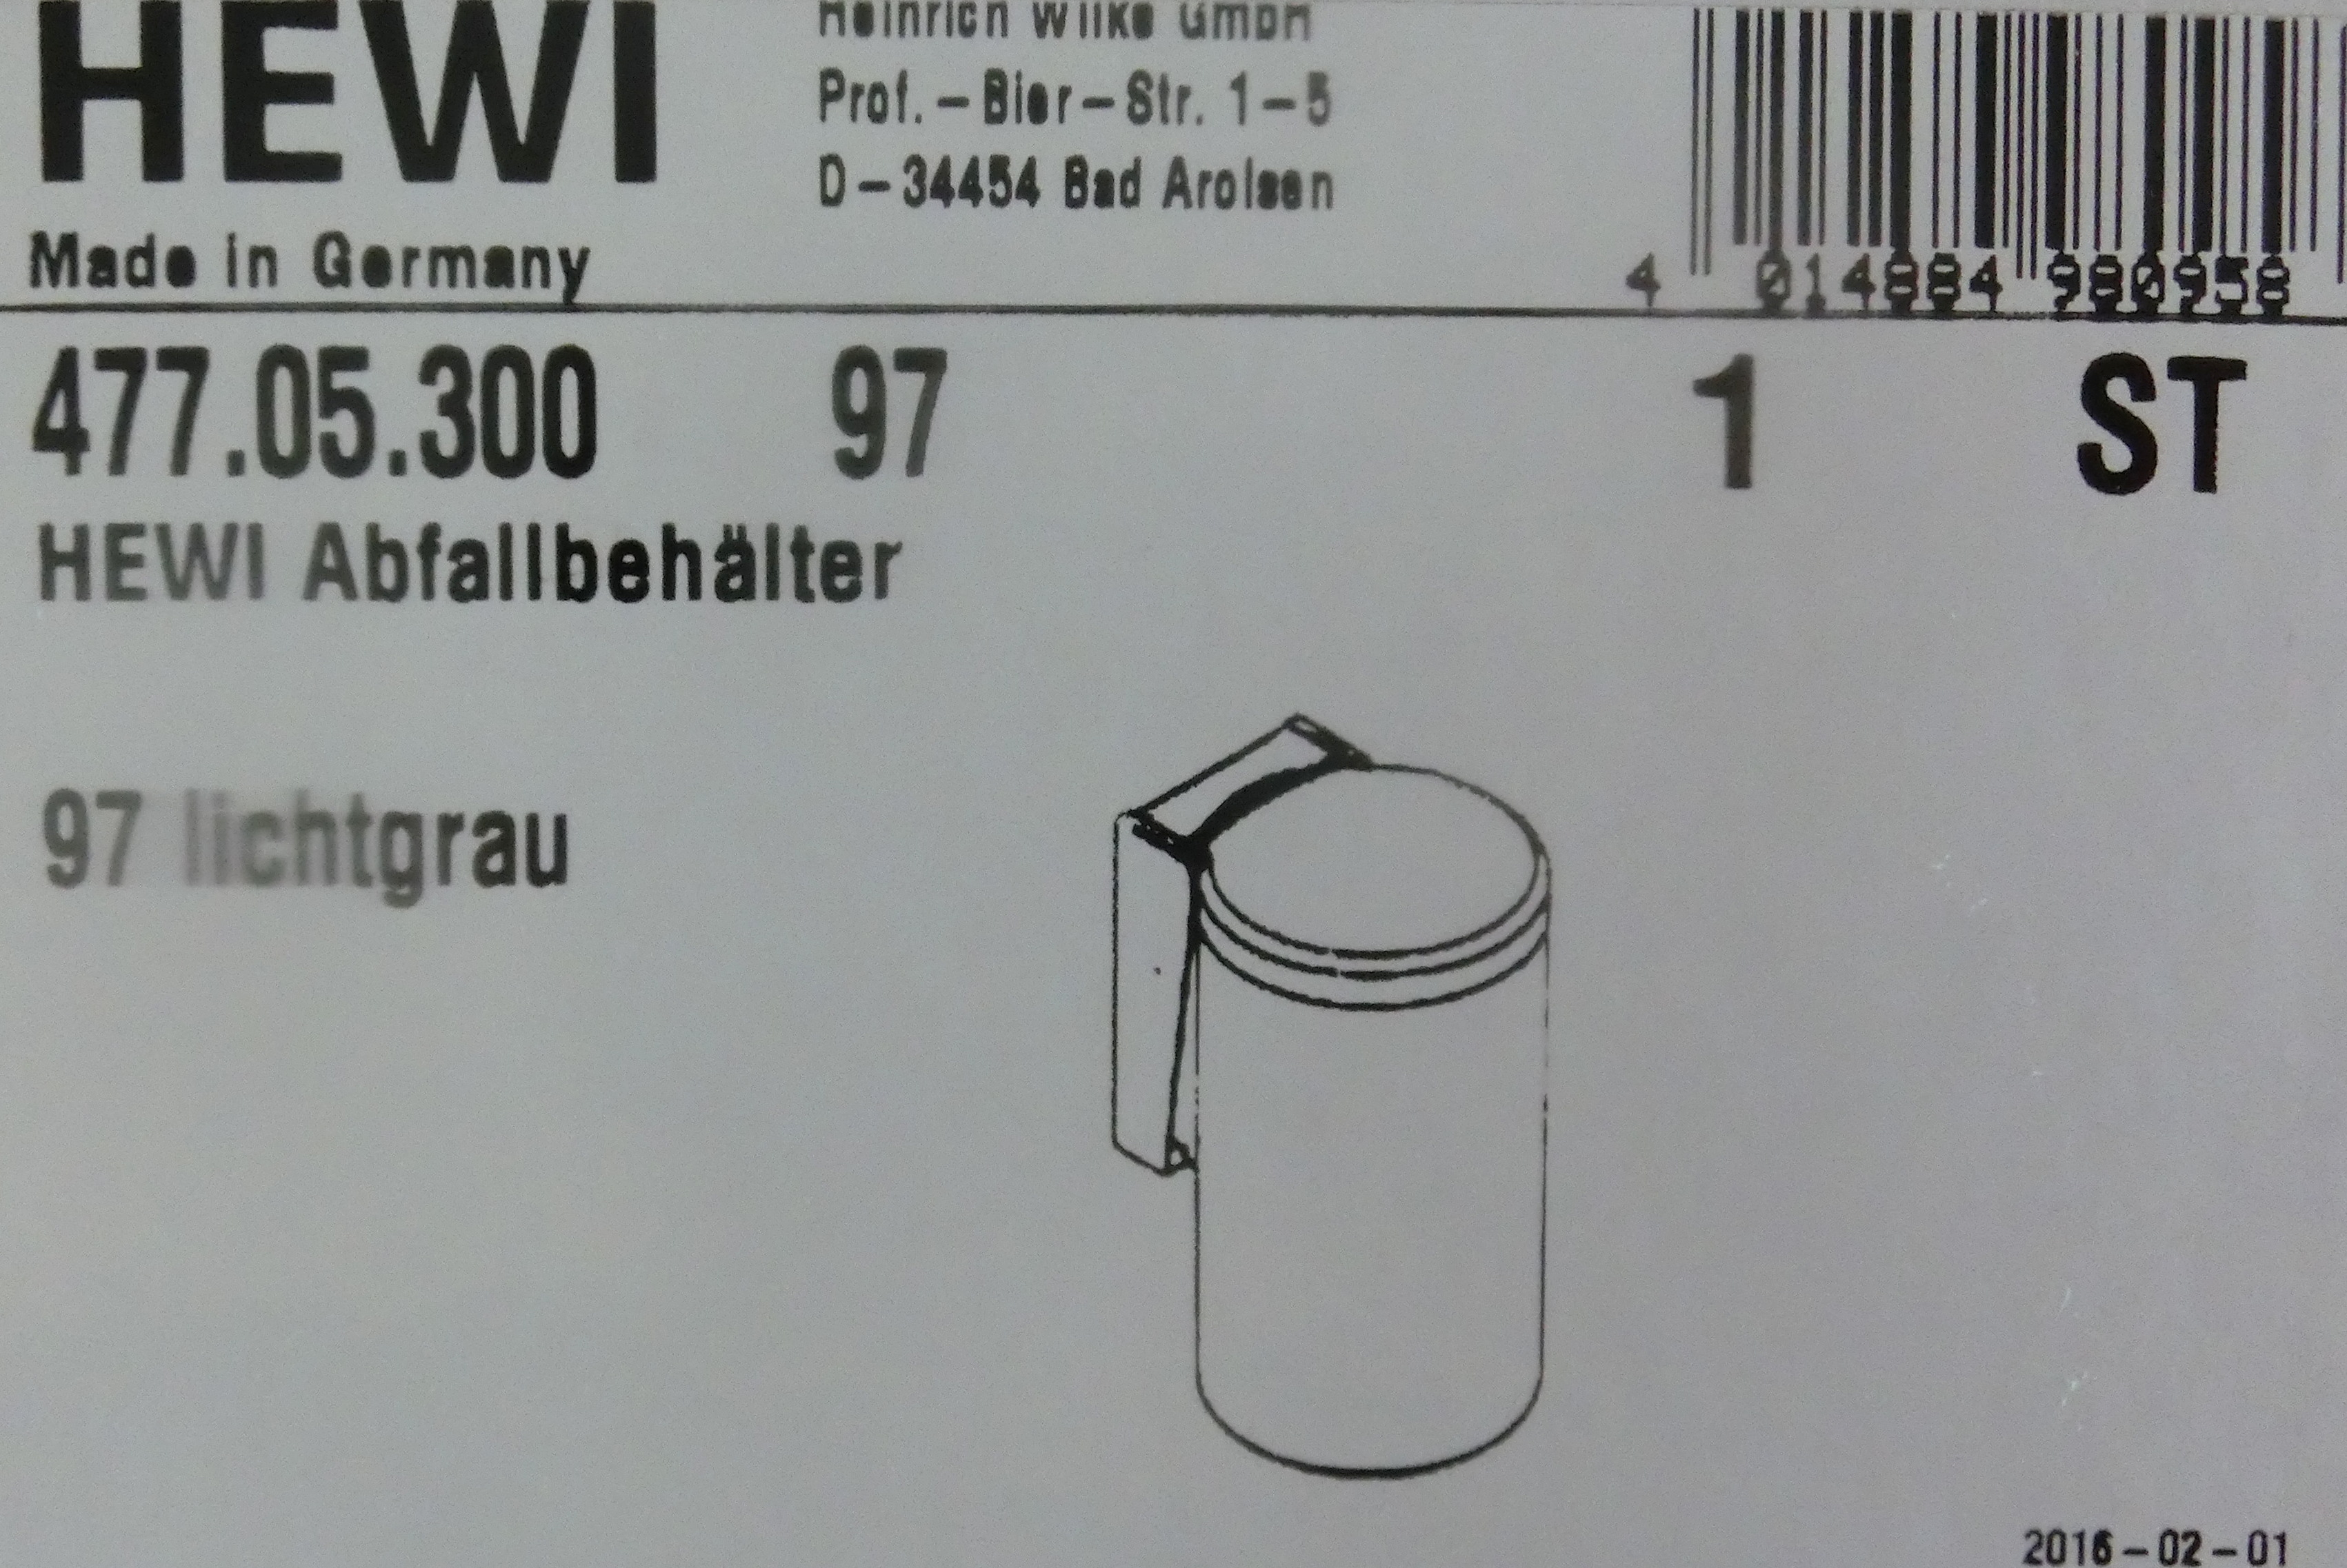 Hewi Serie 477 Abfallbehälter reinweiß; 477.05.300-99 